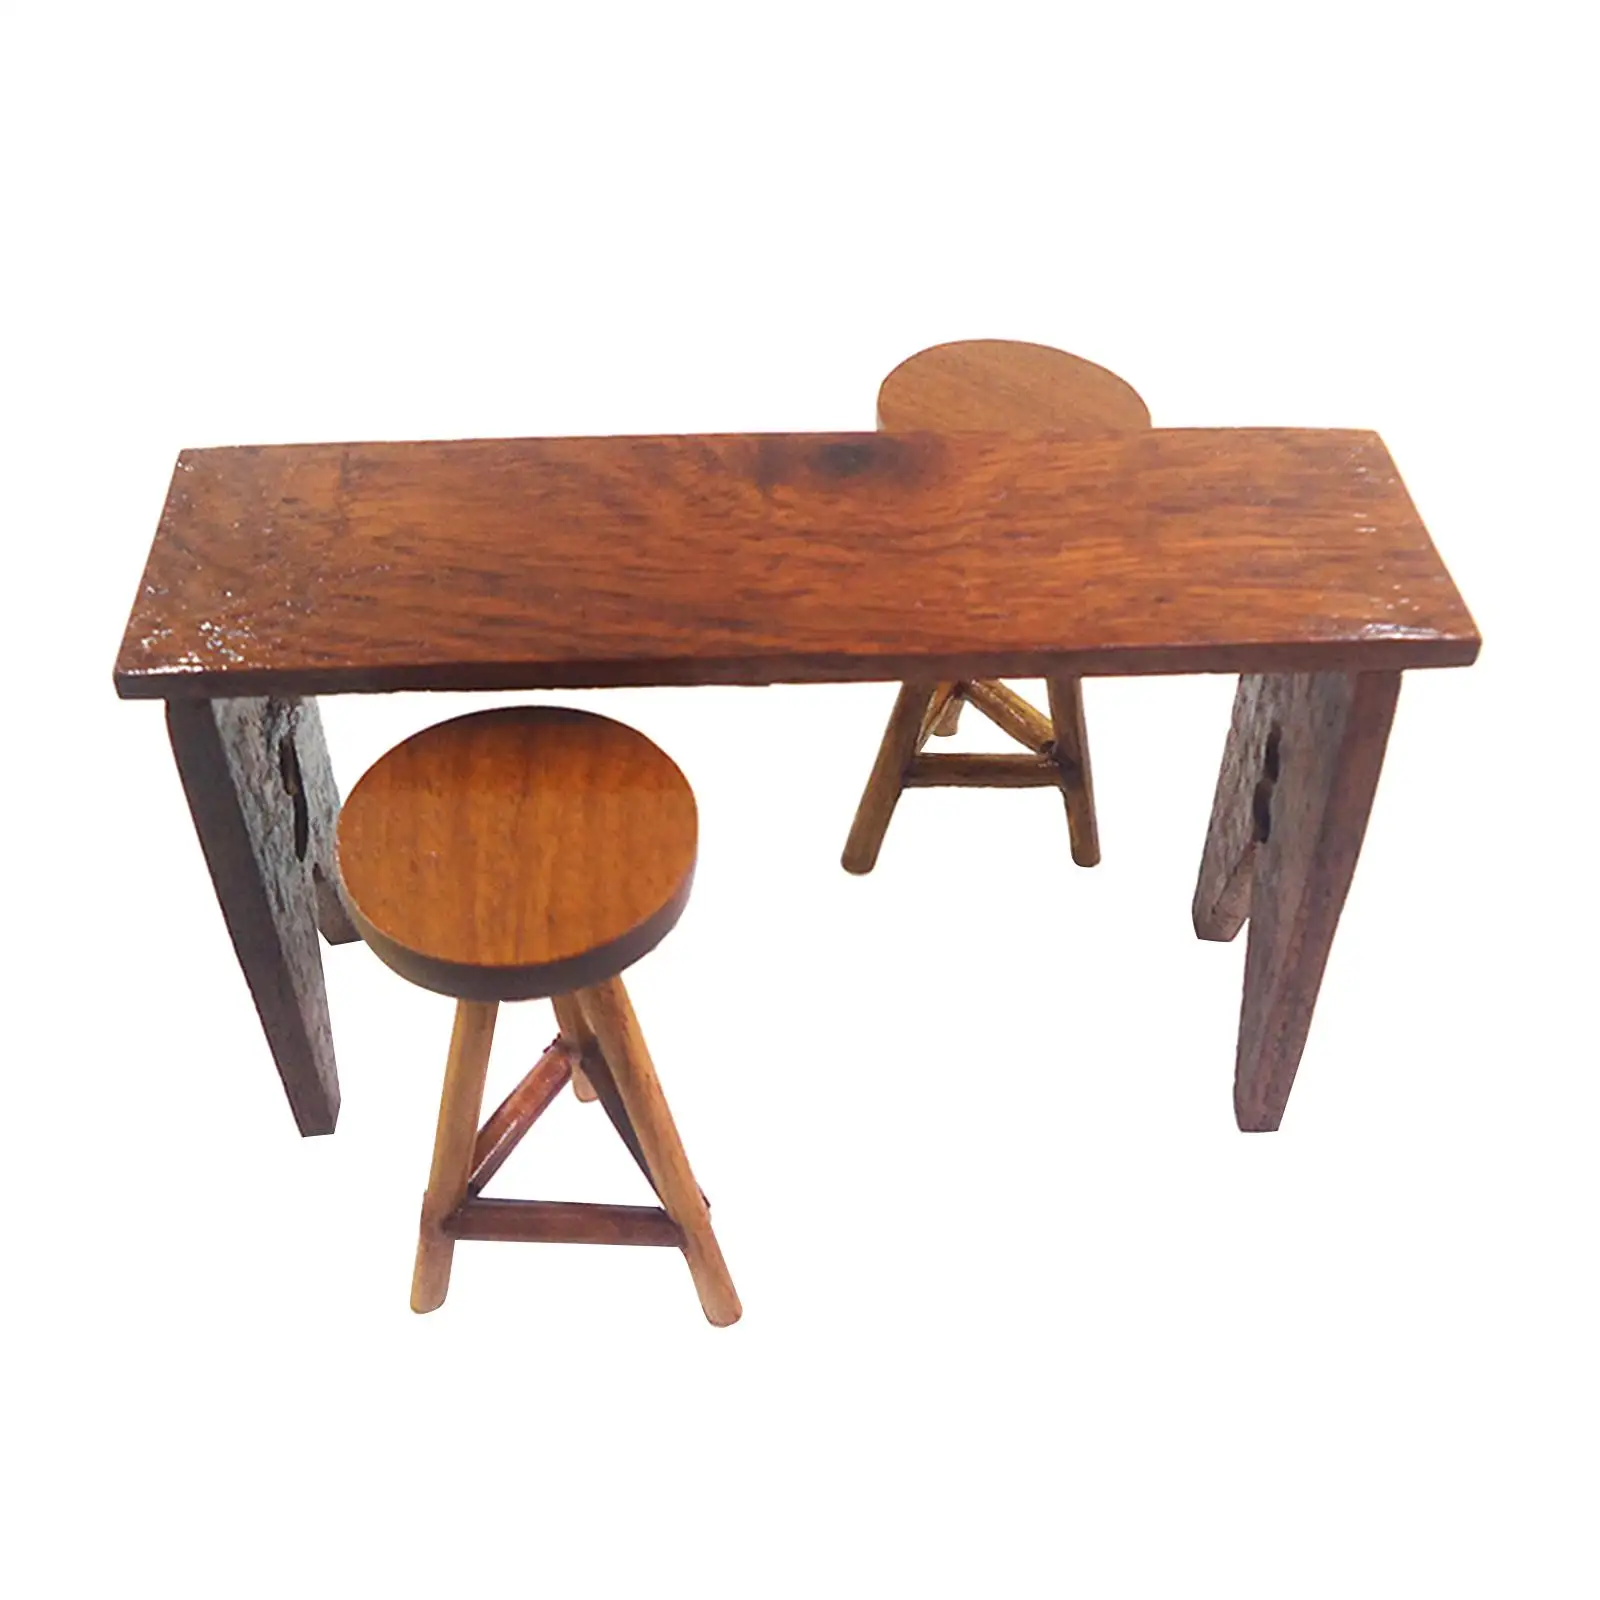 Miniature Bar Table High Chair Decor Wooden 1:12 for Dollhouse DIY Accessory